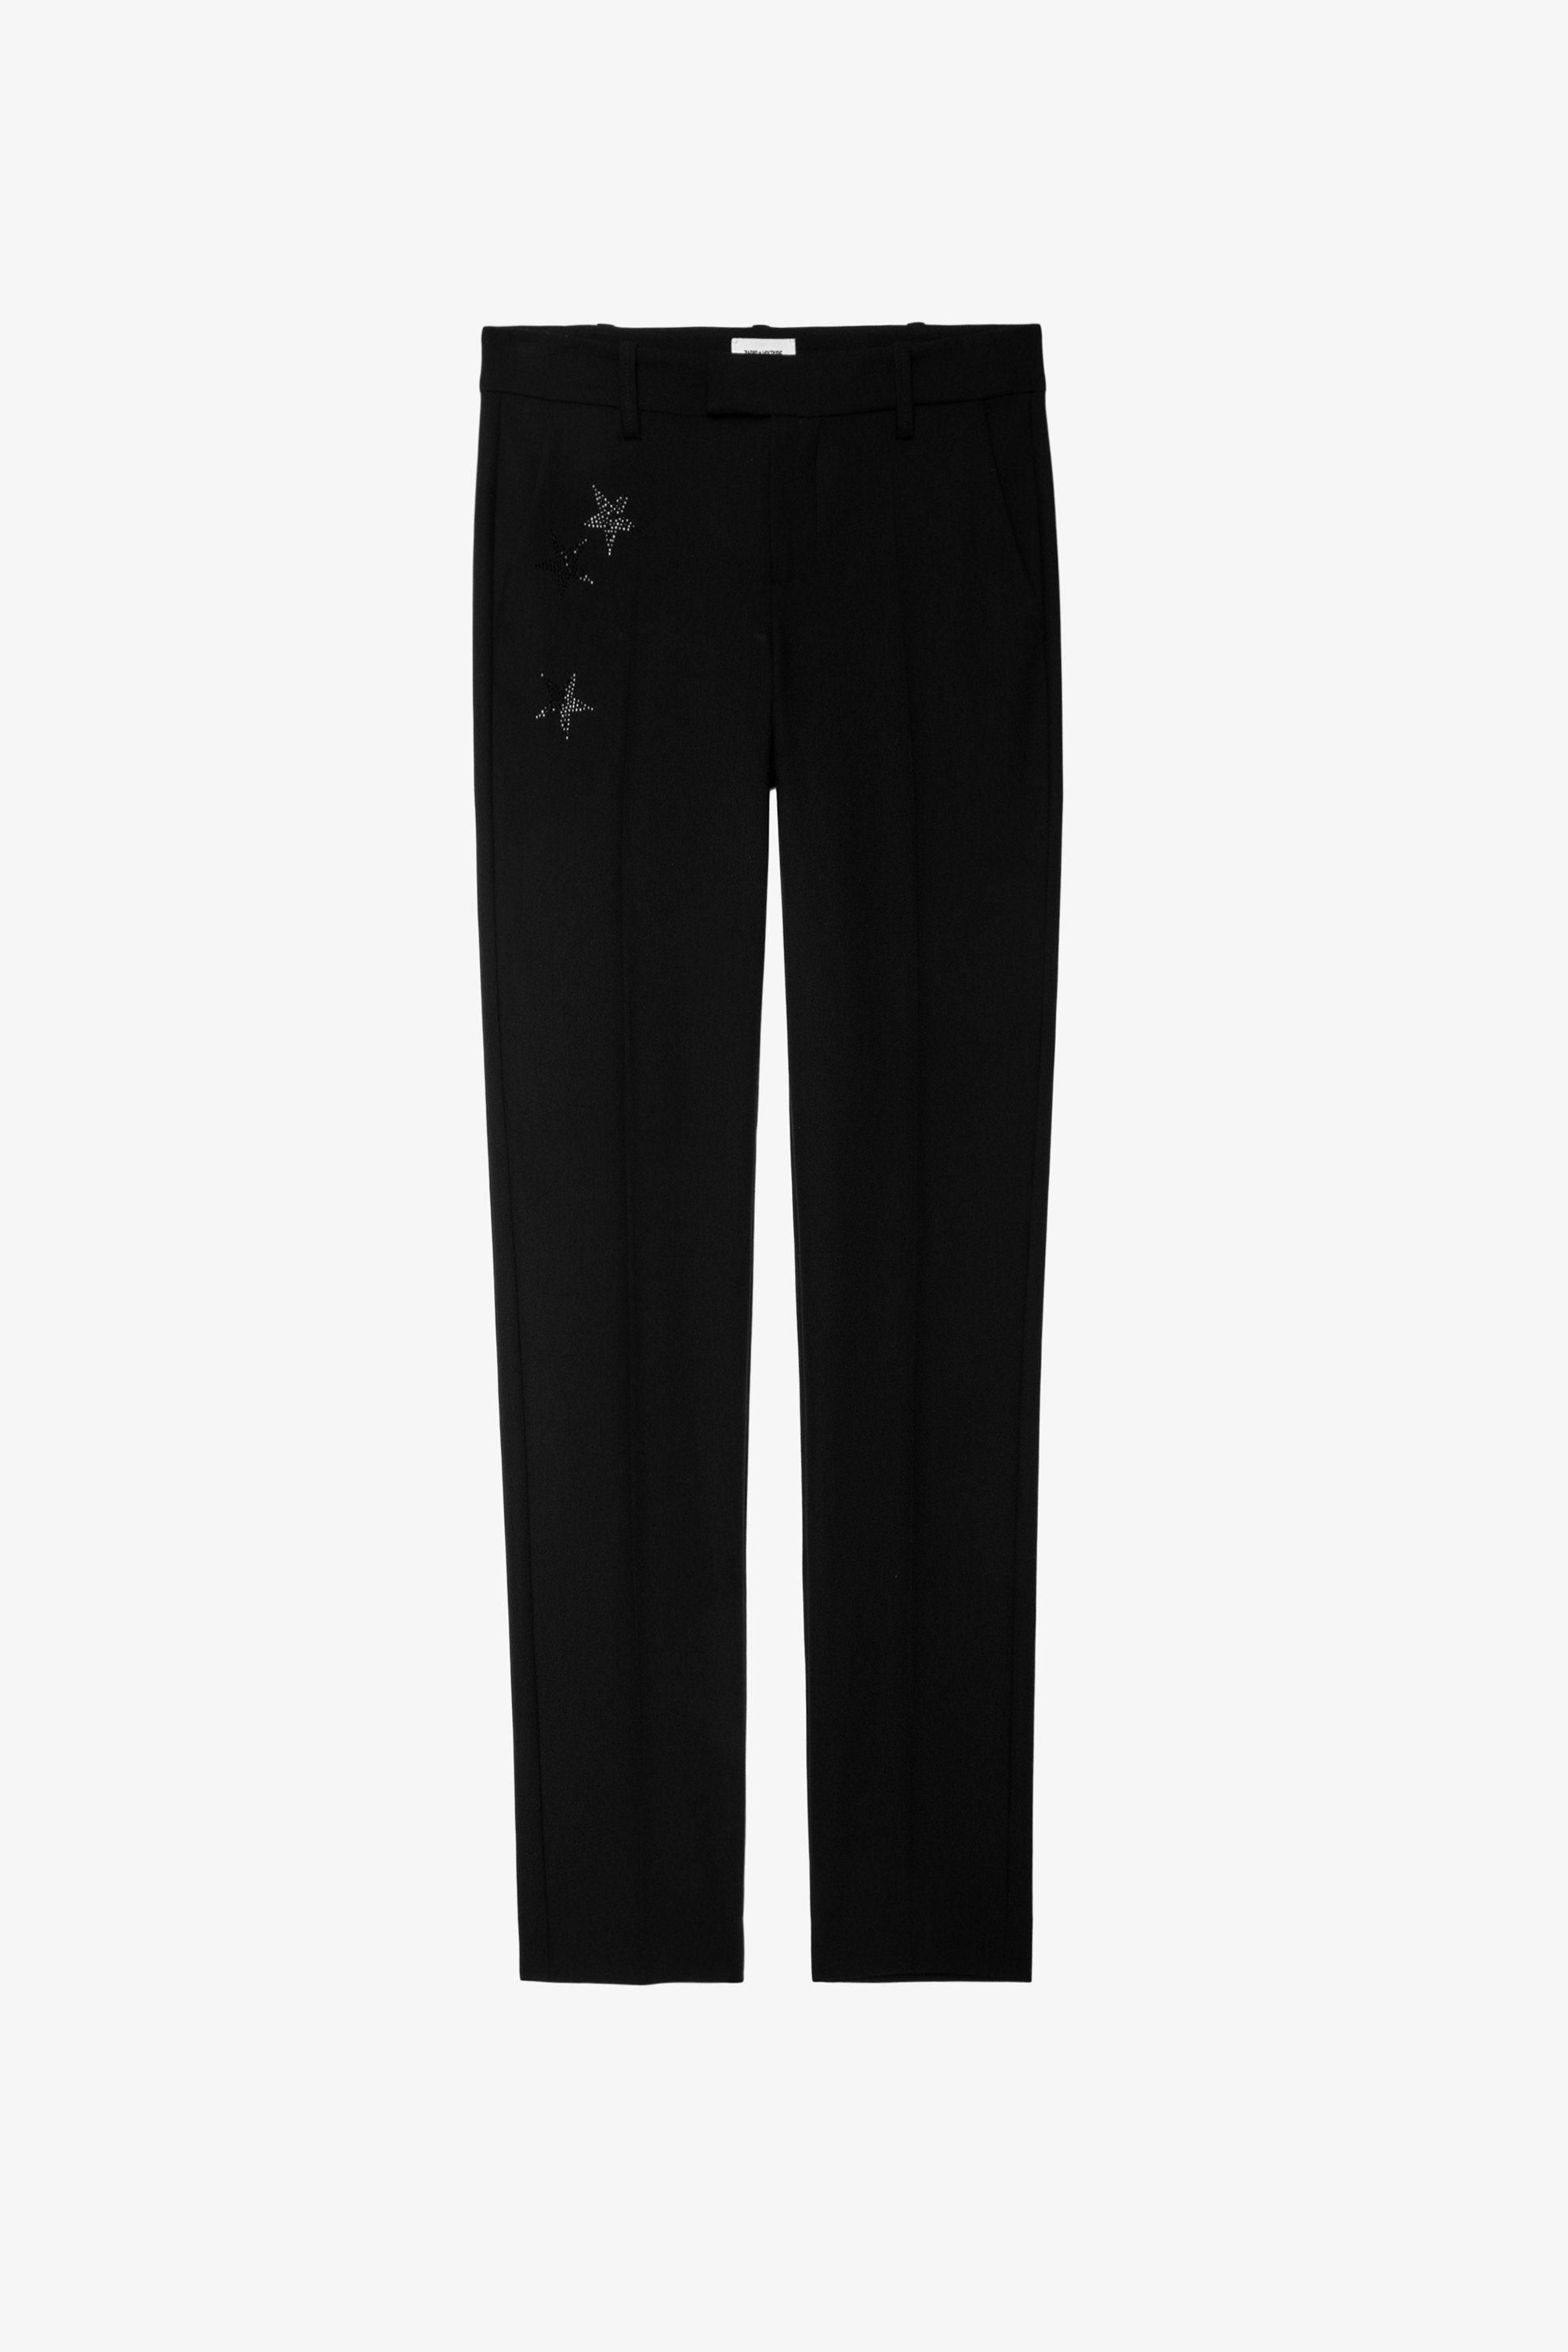 Pantaloni Prune Strass Star - Pantaloni neri da tailleur da donna Zadig&Voltaire con stelle in strass sulla tasca.